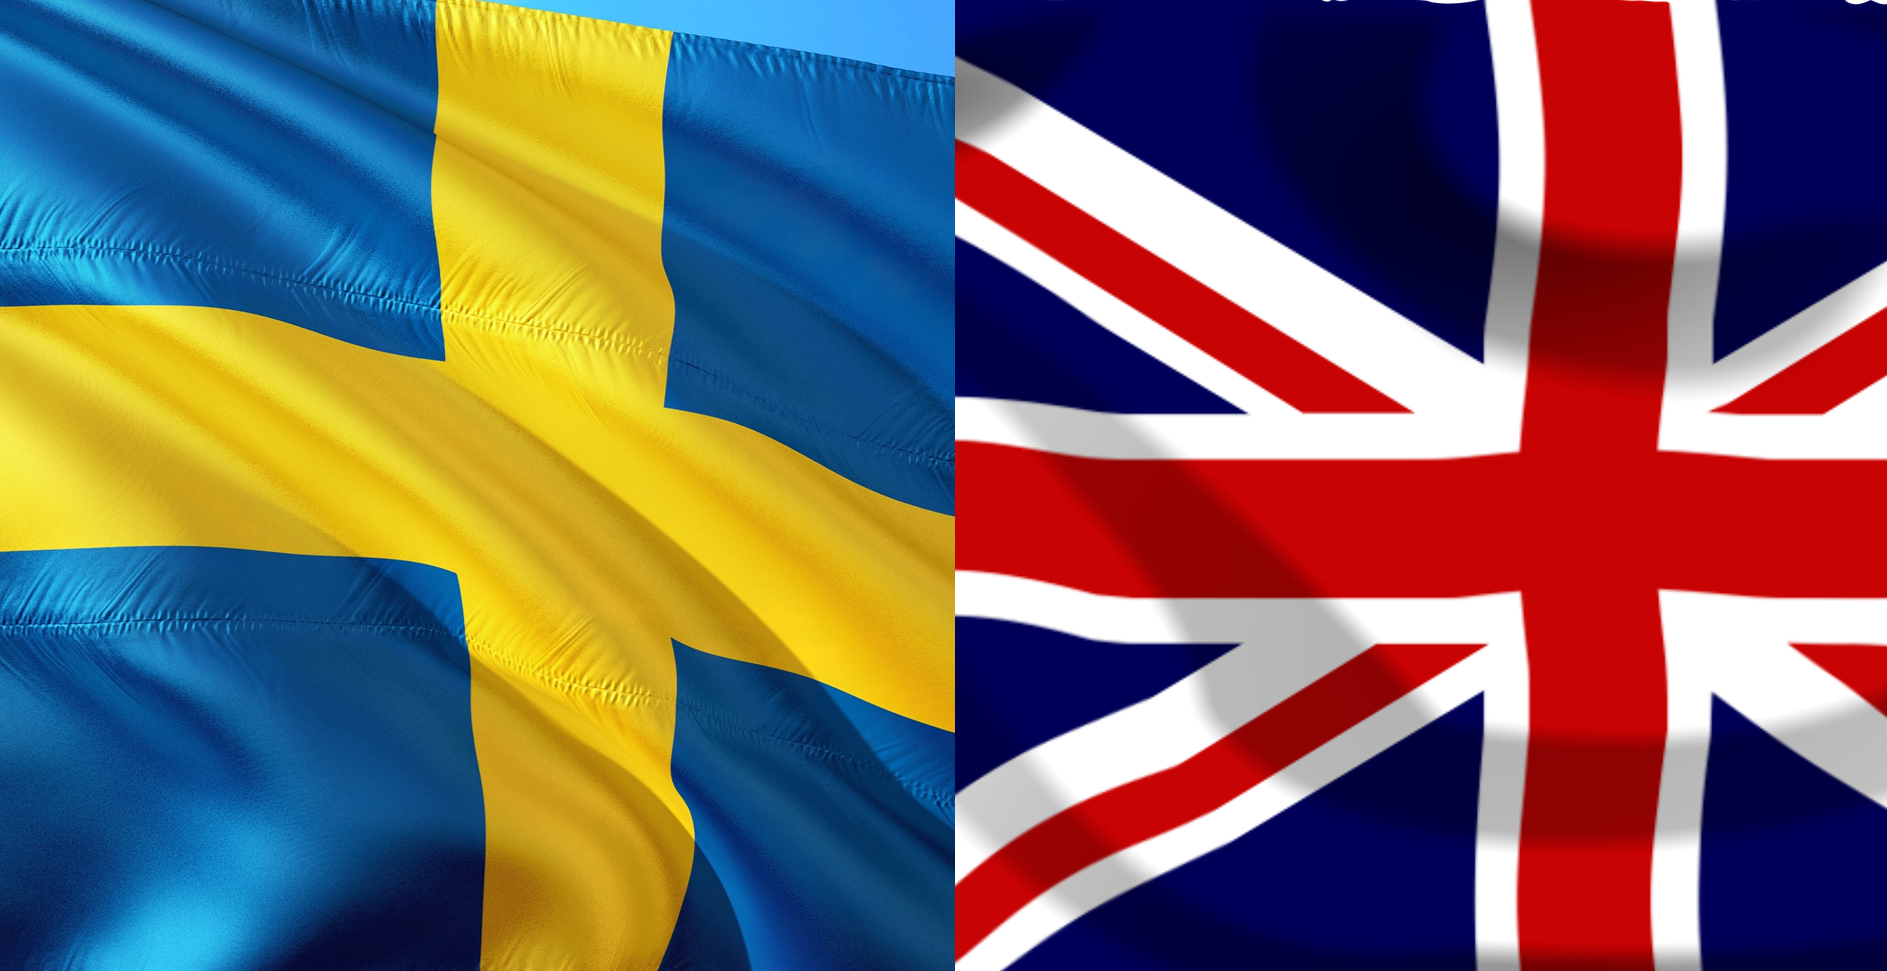 scenariusz na bezrobocie w Szwecji oraz Wielkiej Brytanii – 12 kwietnia 2022